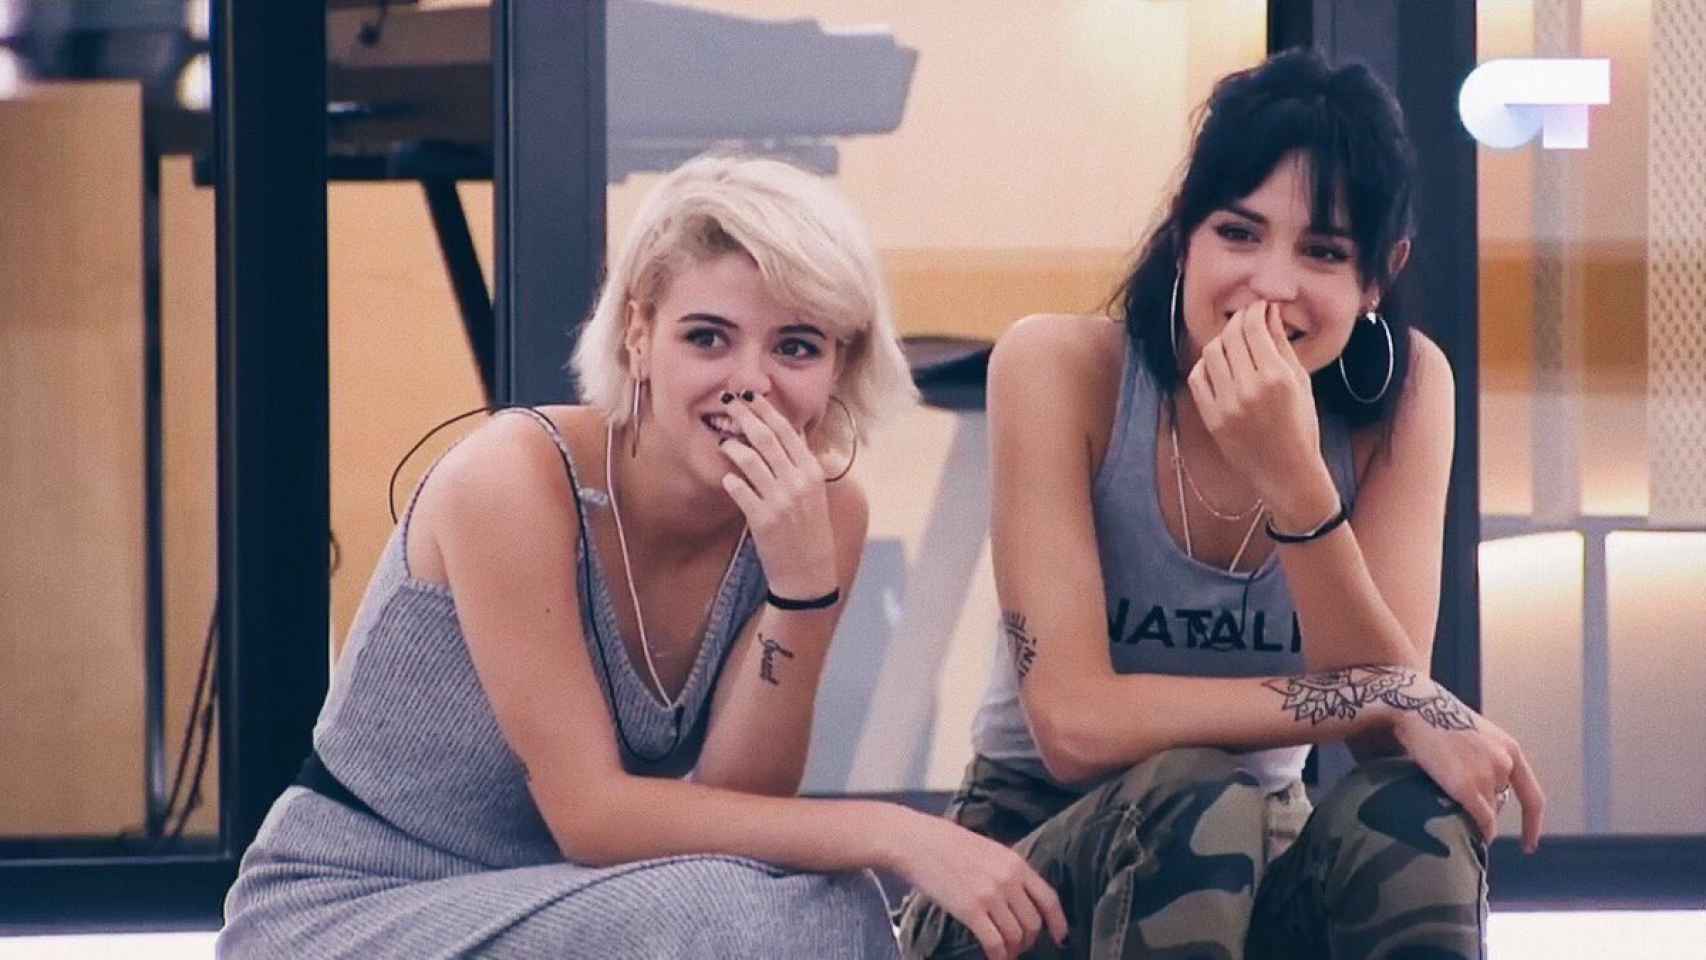 Alba y Natalia durante una clase en la academia.